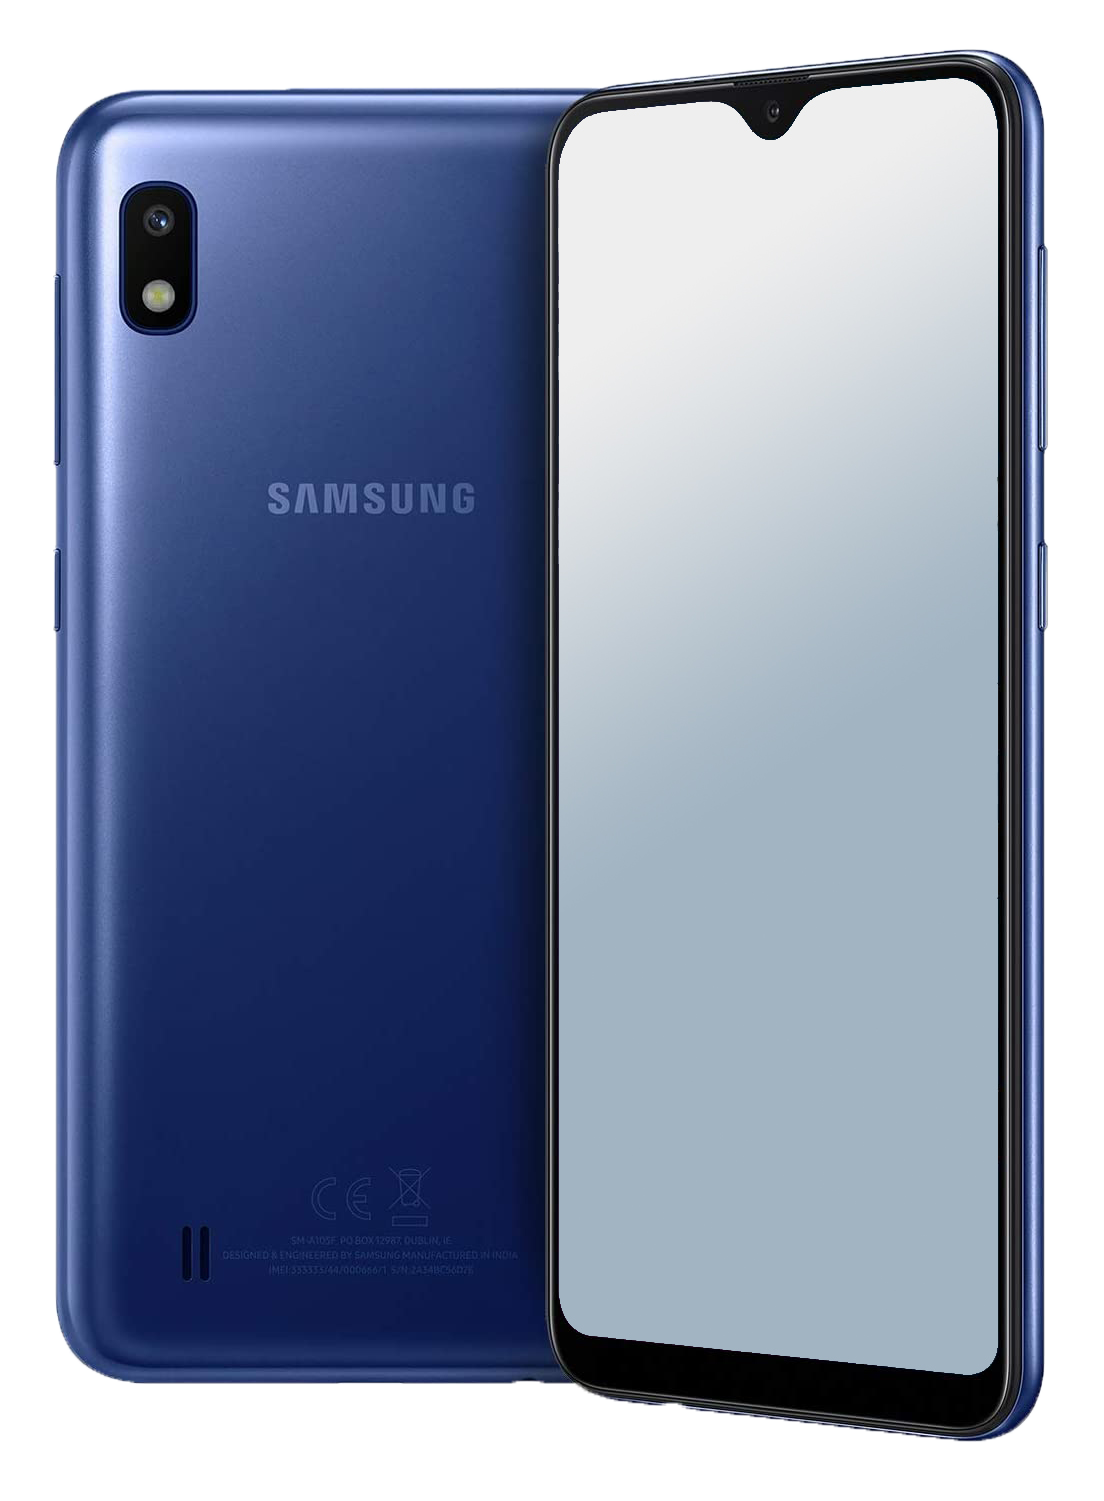 Samsung Galaxy A10 Dual-SIM blau - Ohne Vertrag